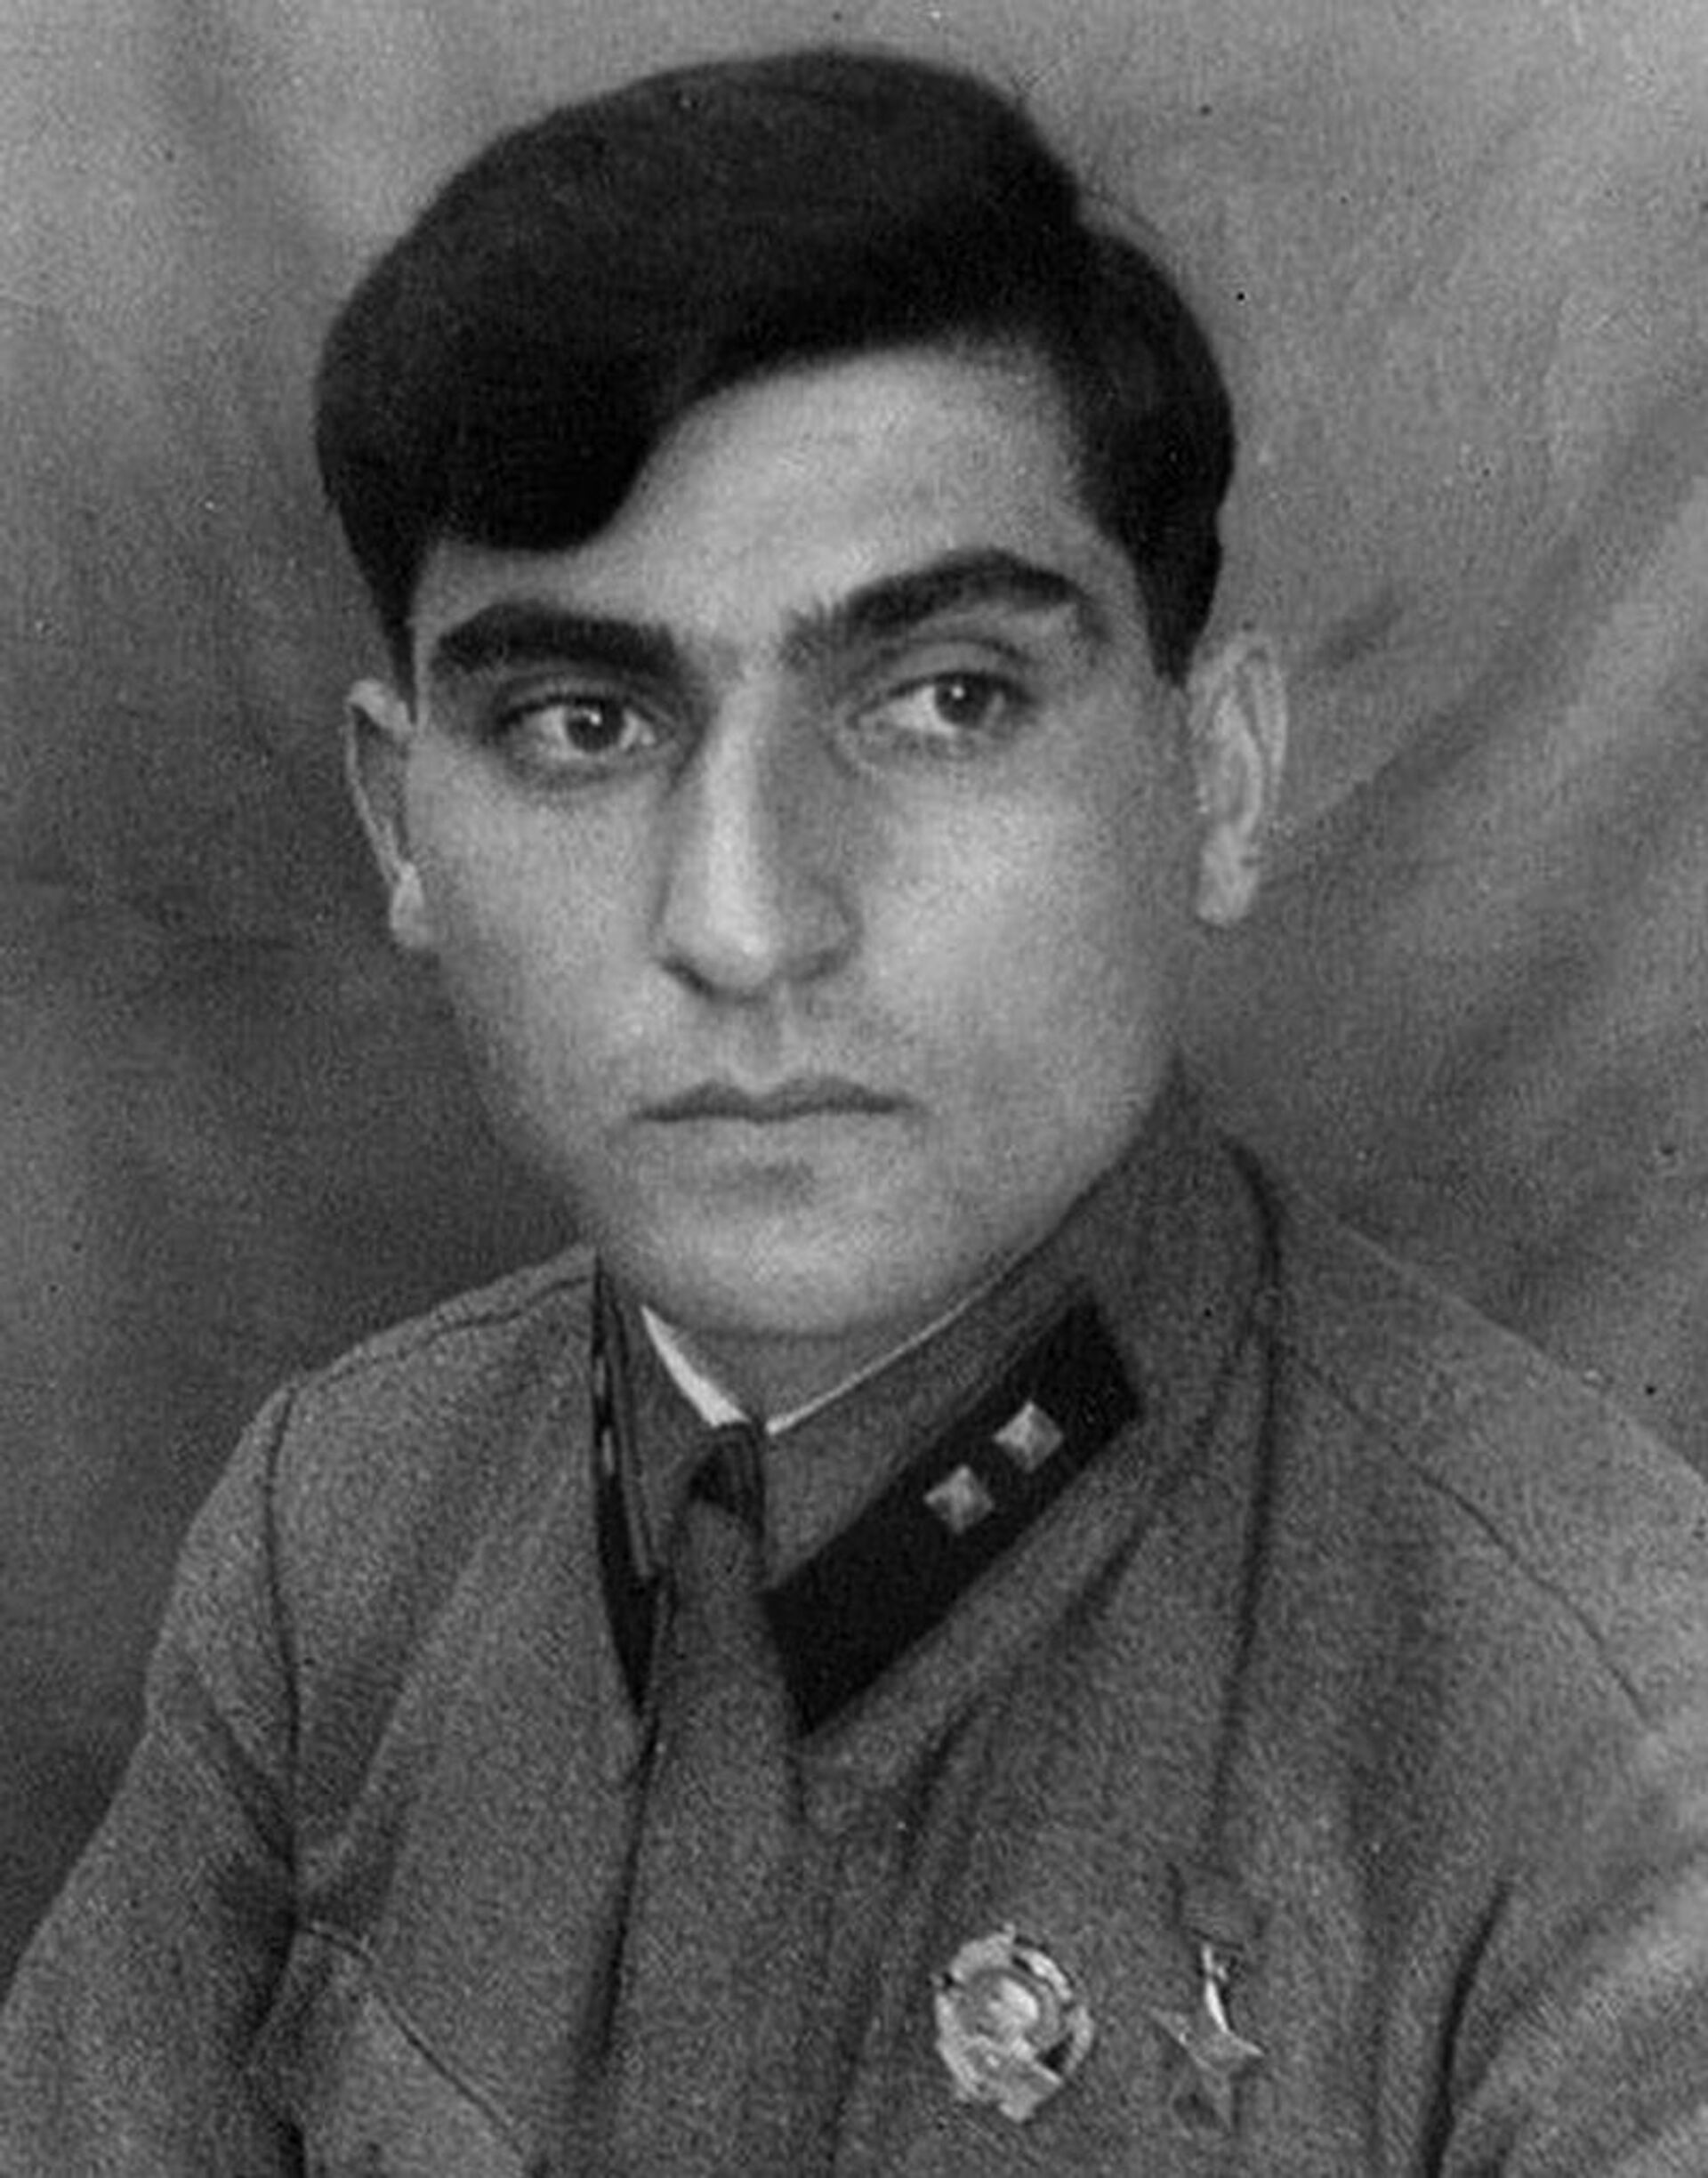 39 героев ВОВ из Азербайджана: жизнь и смерть каждого как часть великой истории  - Sputnik Азербайджан, 1920, 22.06.2021